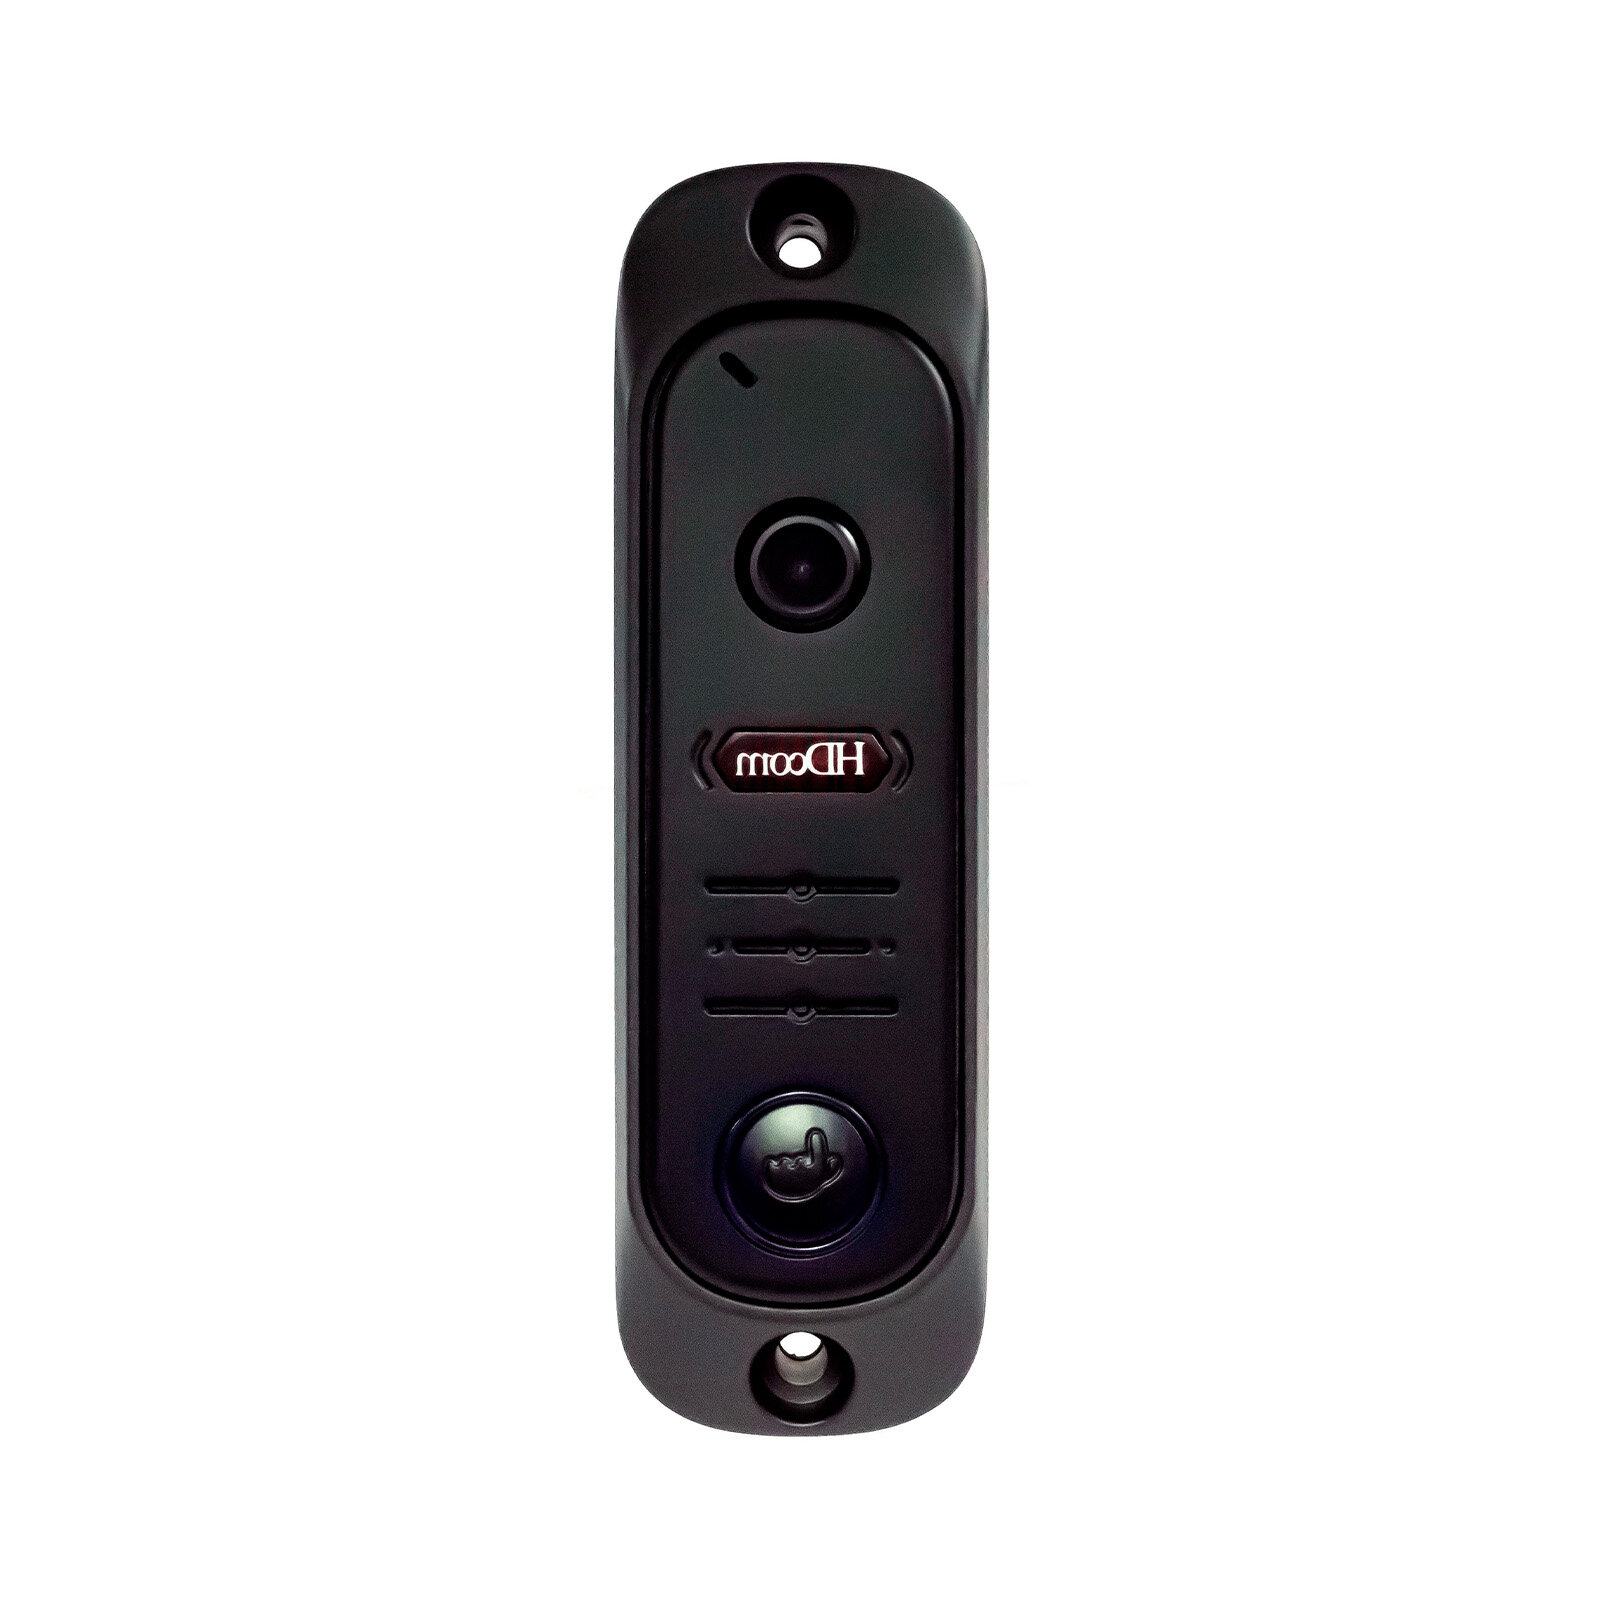 Вызывная панель для видеодомофонов с ИК HDcom 84206-CR-AHD (E1974EU). Антивандальная вызывная панель с камерой для домофона.